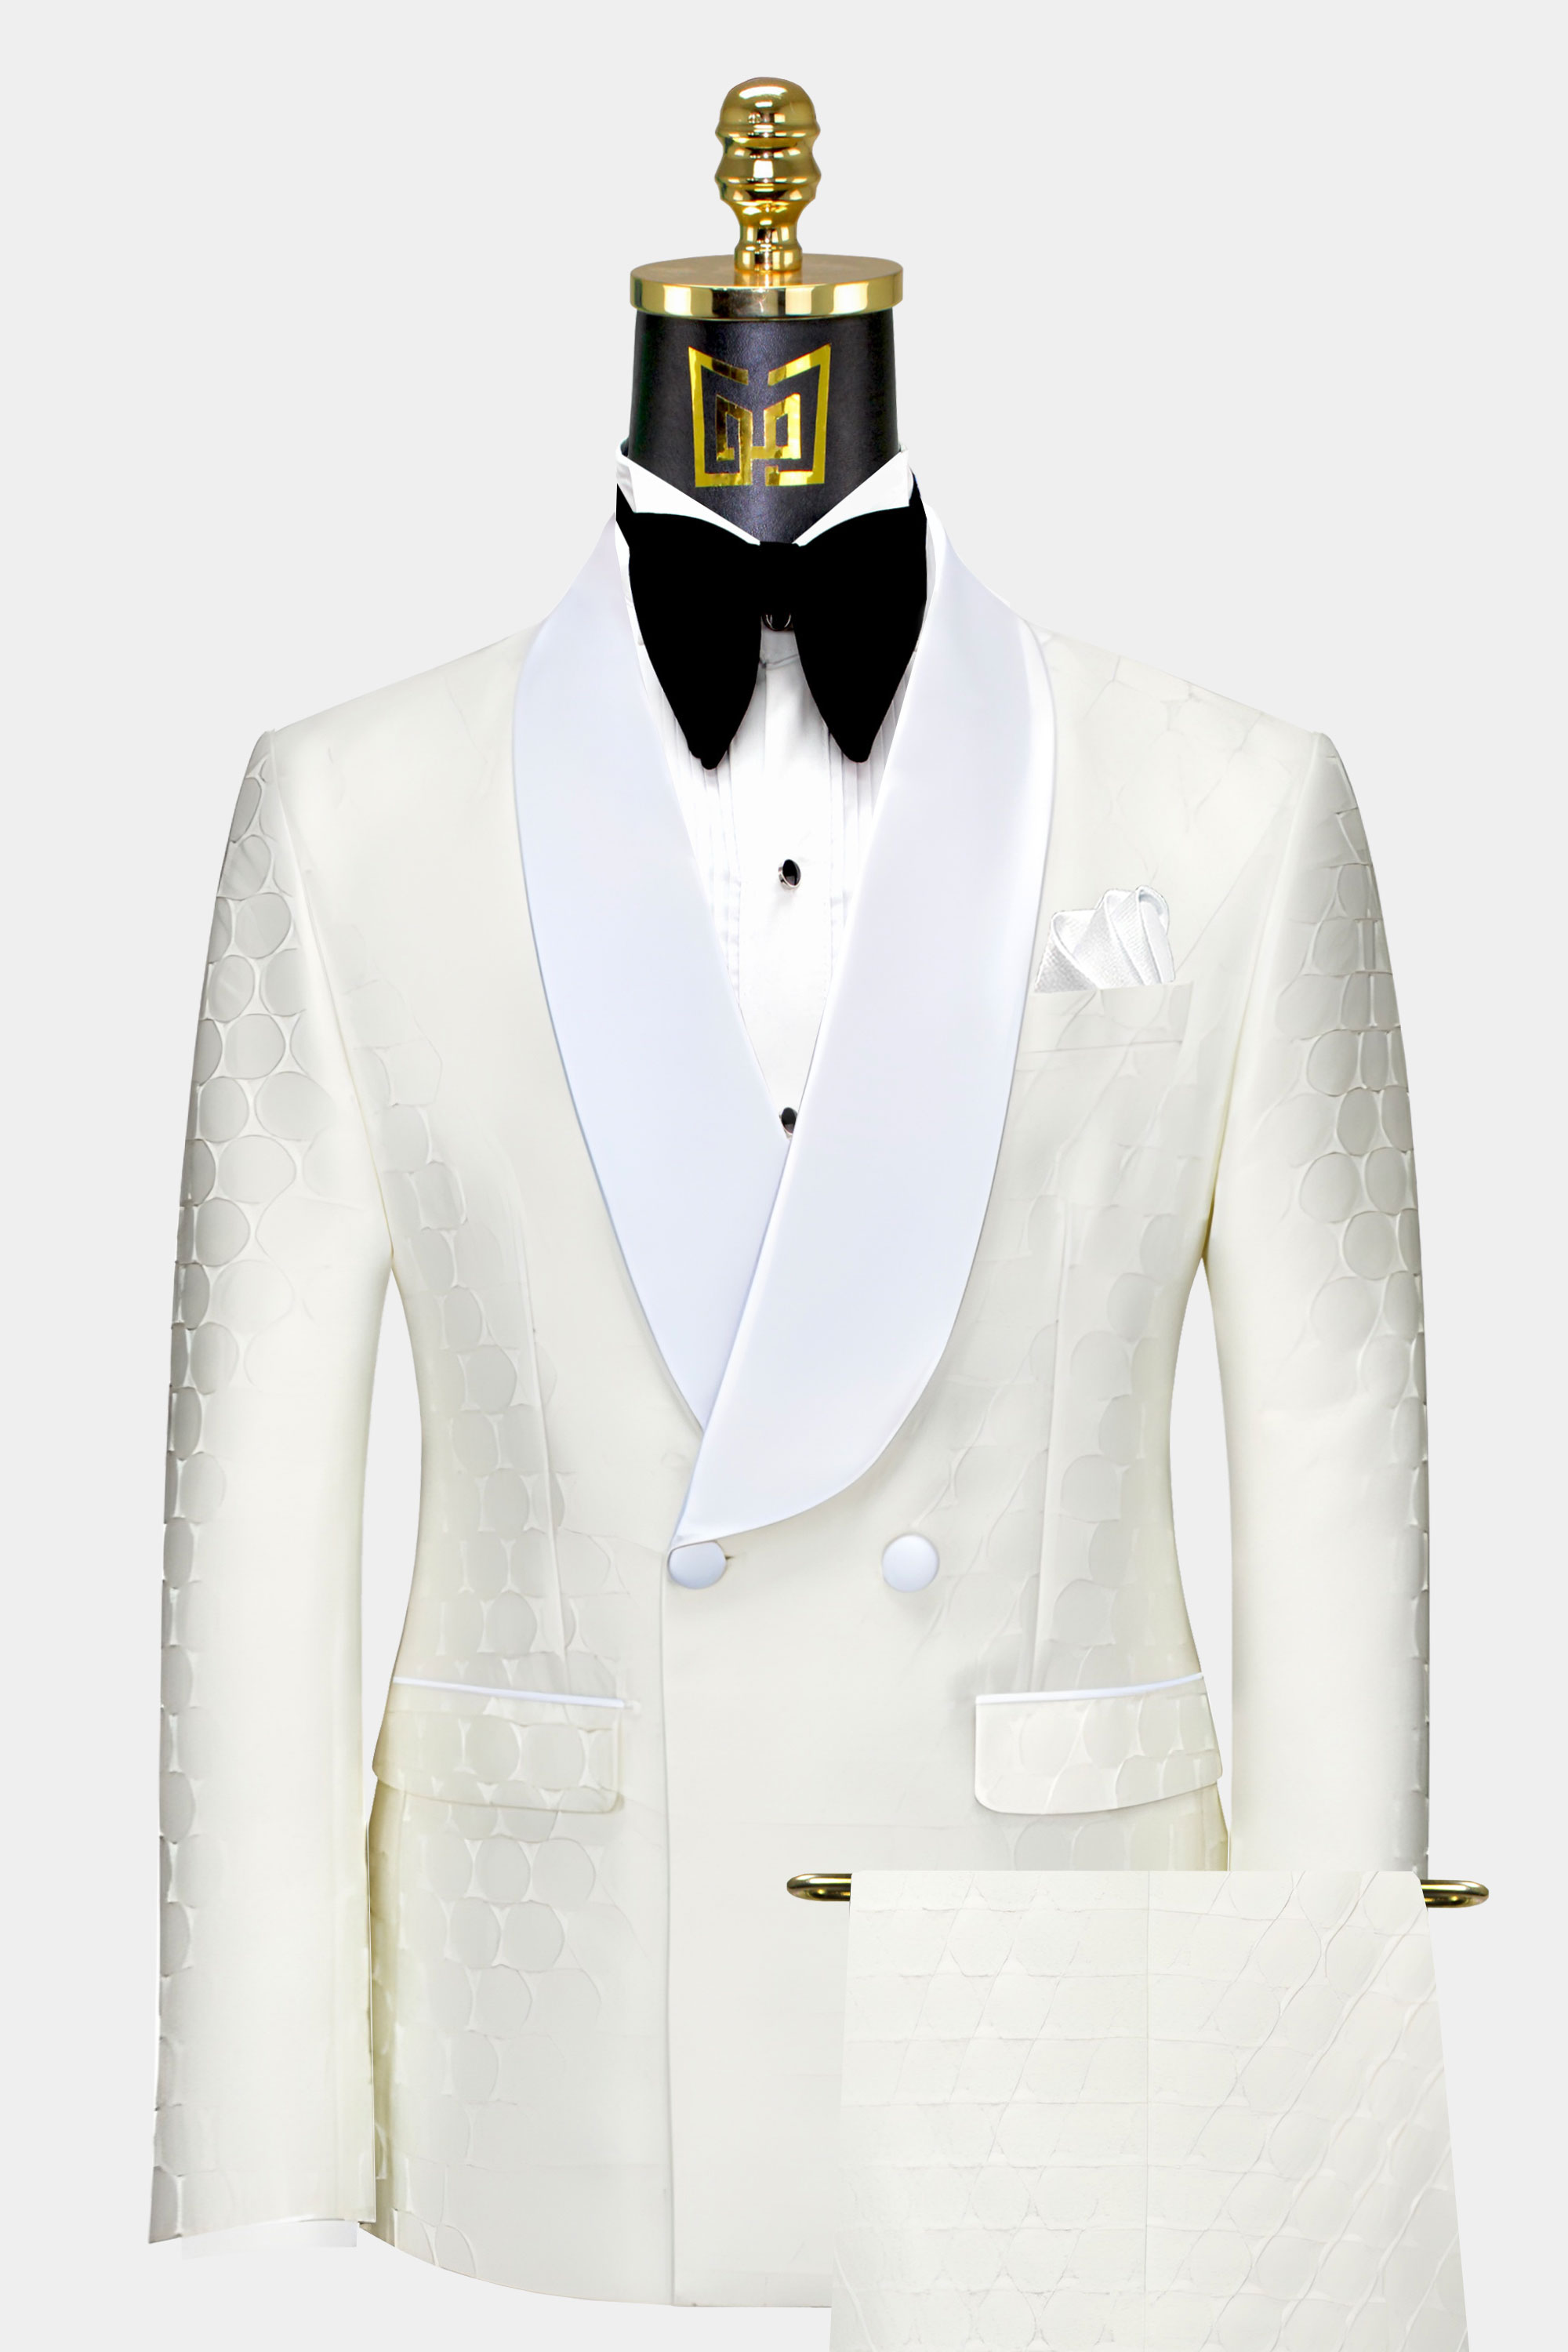 Mens-Cream-Tuxedo-Groom-Wedding-Suit-For-Men-from-Gentlemansguru.com